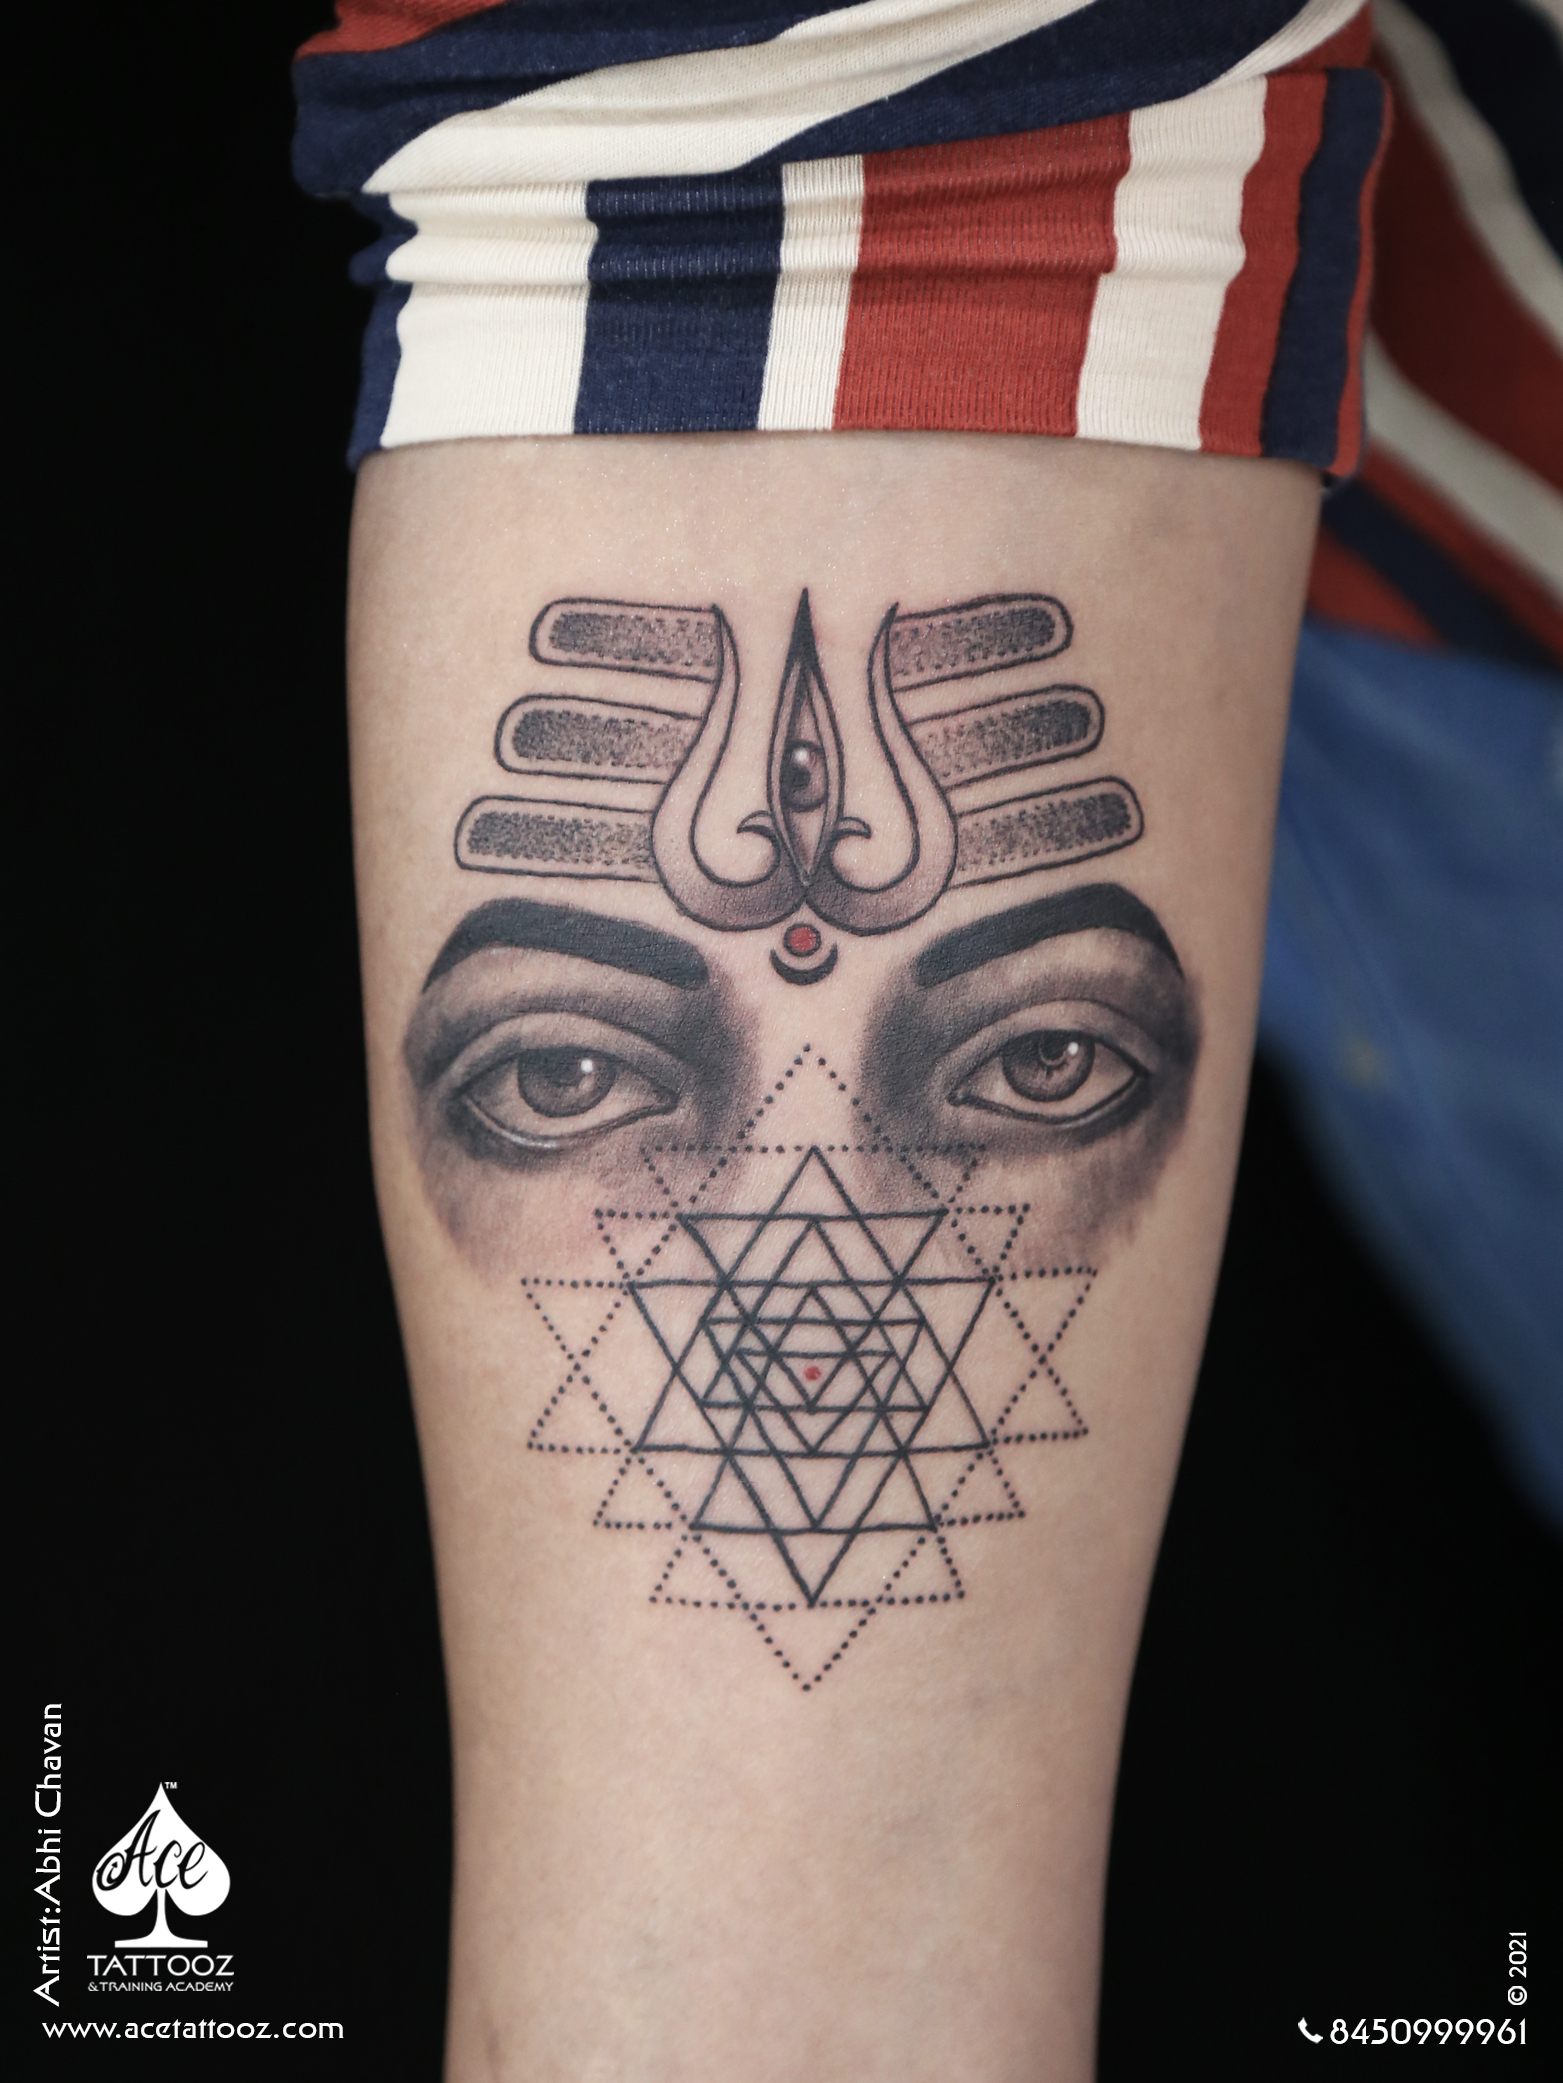 triquetra tattoo by Shadofoxx on DeviantArt